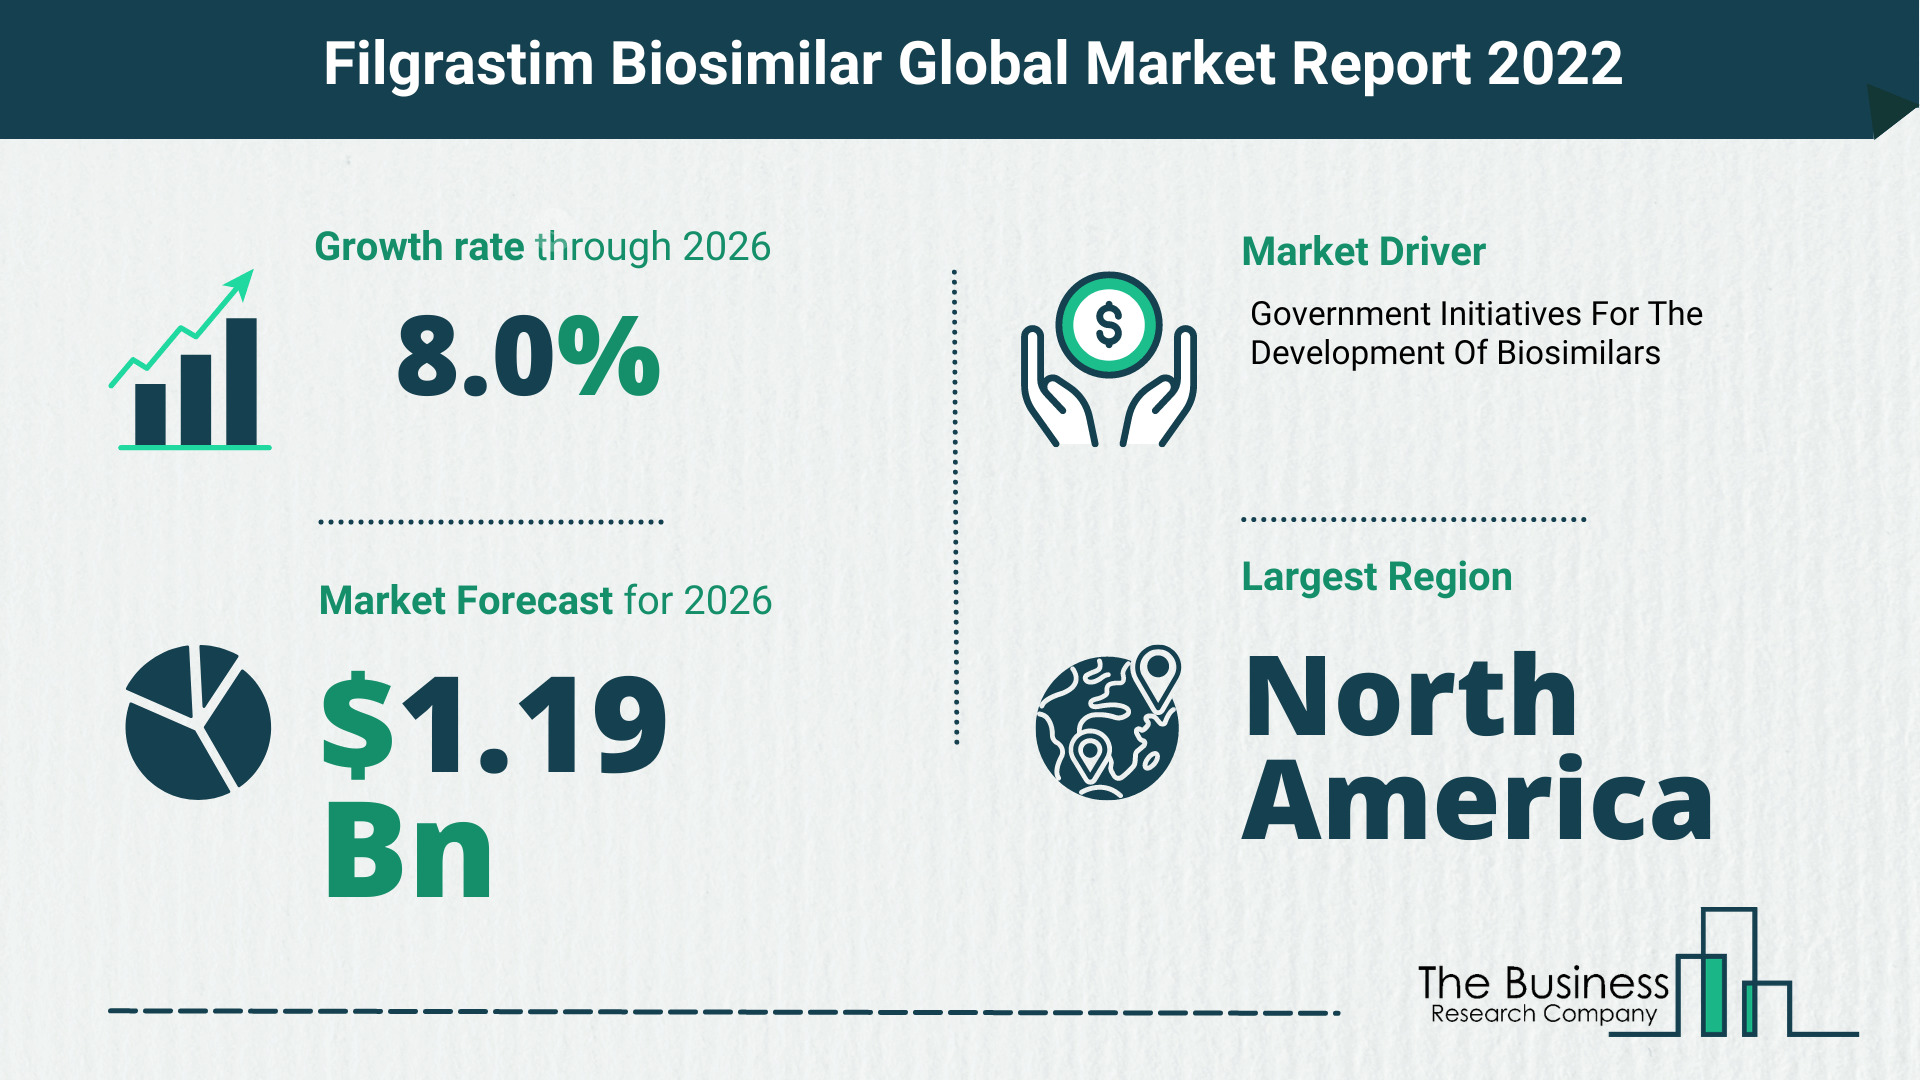 How Will The Filgrastim Biosimilar Market Grow In 2022?